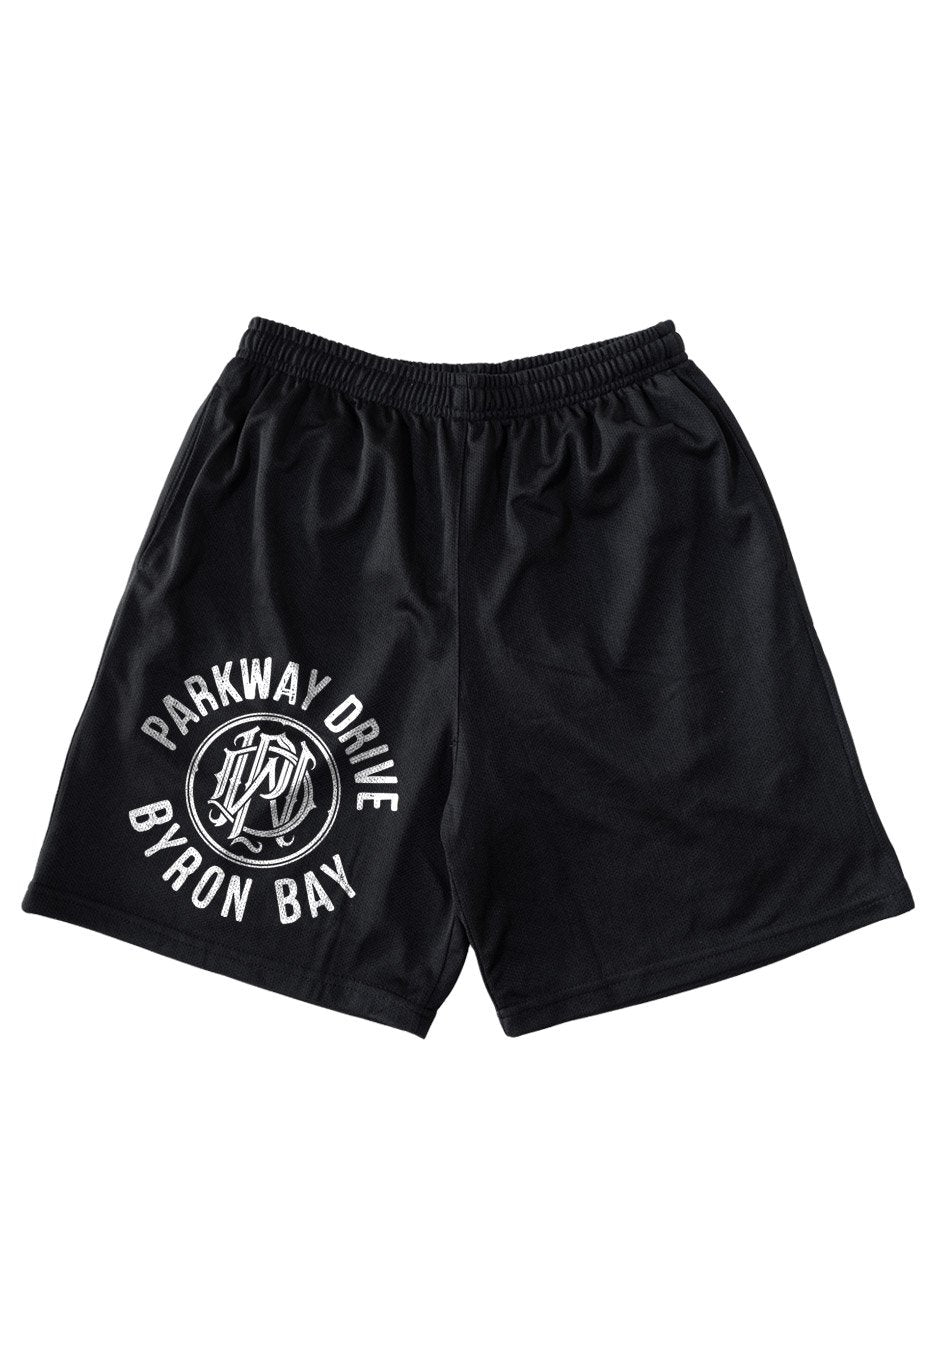 Parkway Drive - Byron Bay - Shorts